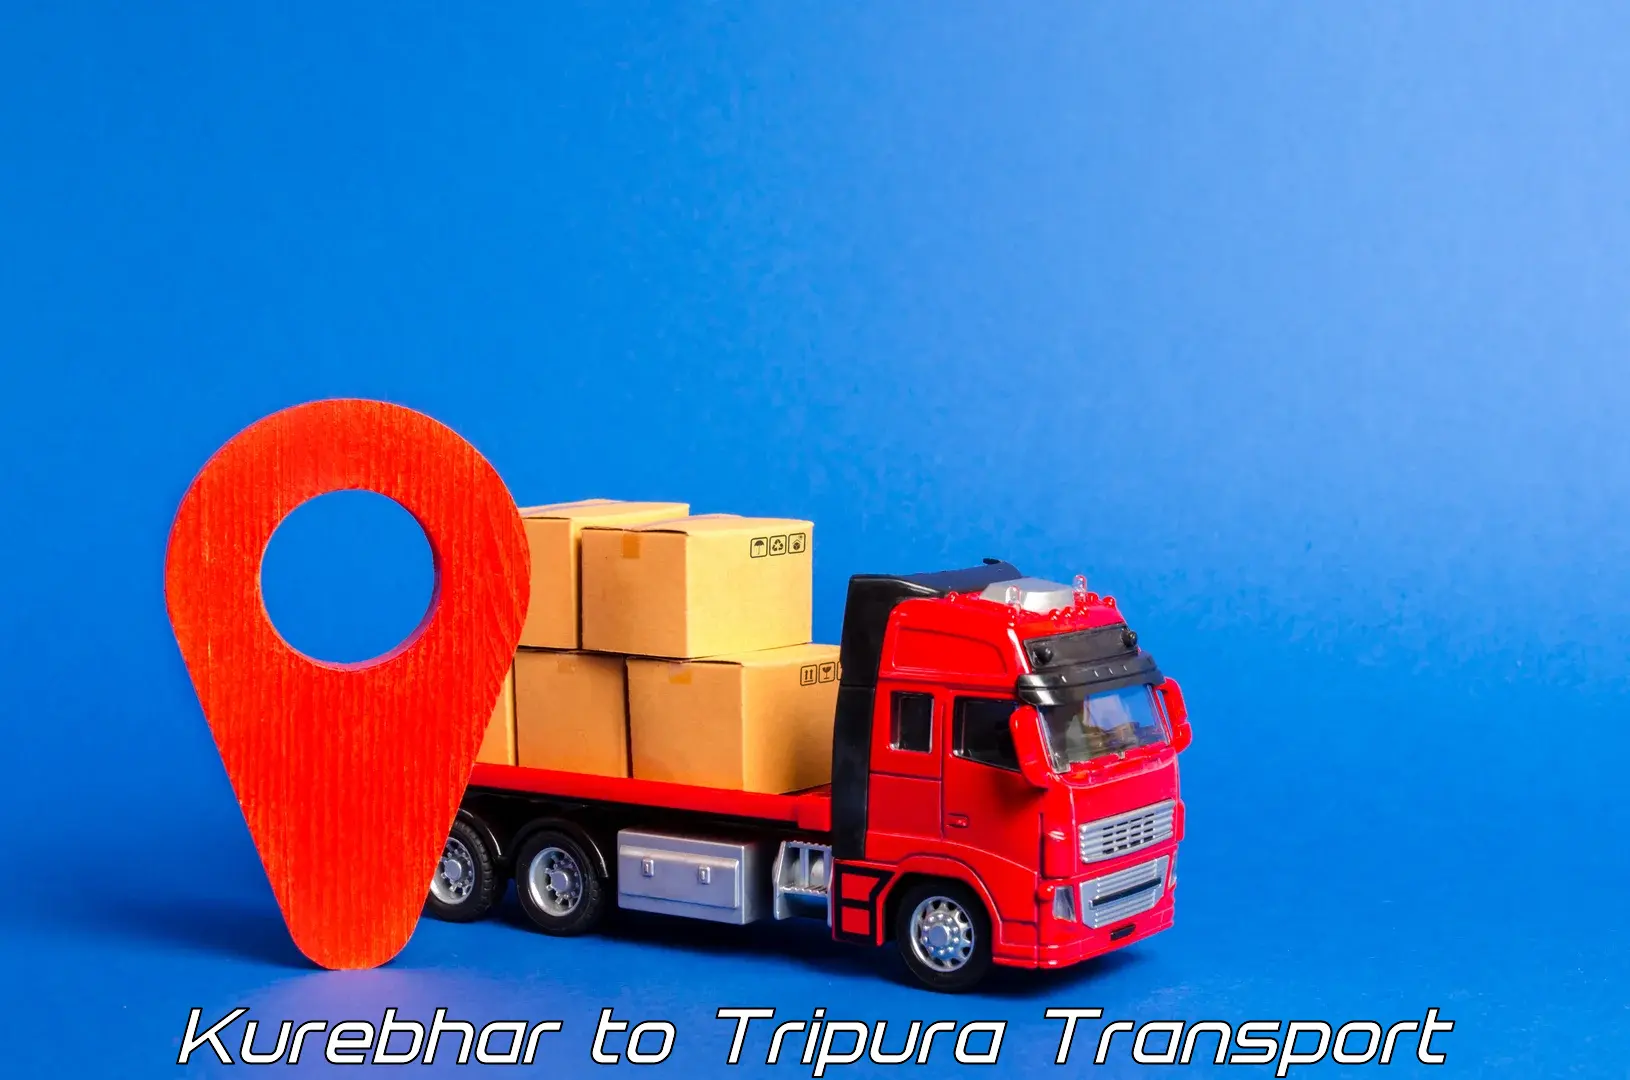 Online transport booking Kurebhar to Udaipur Tripura